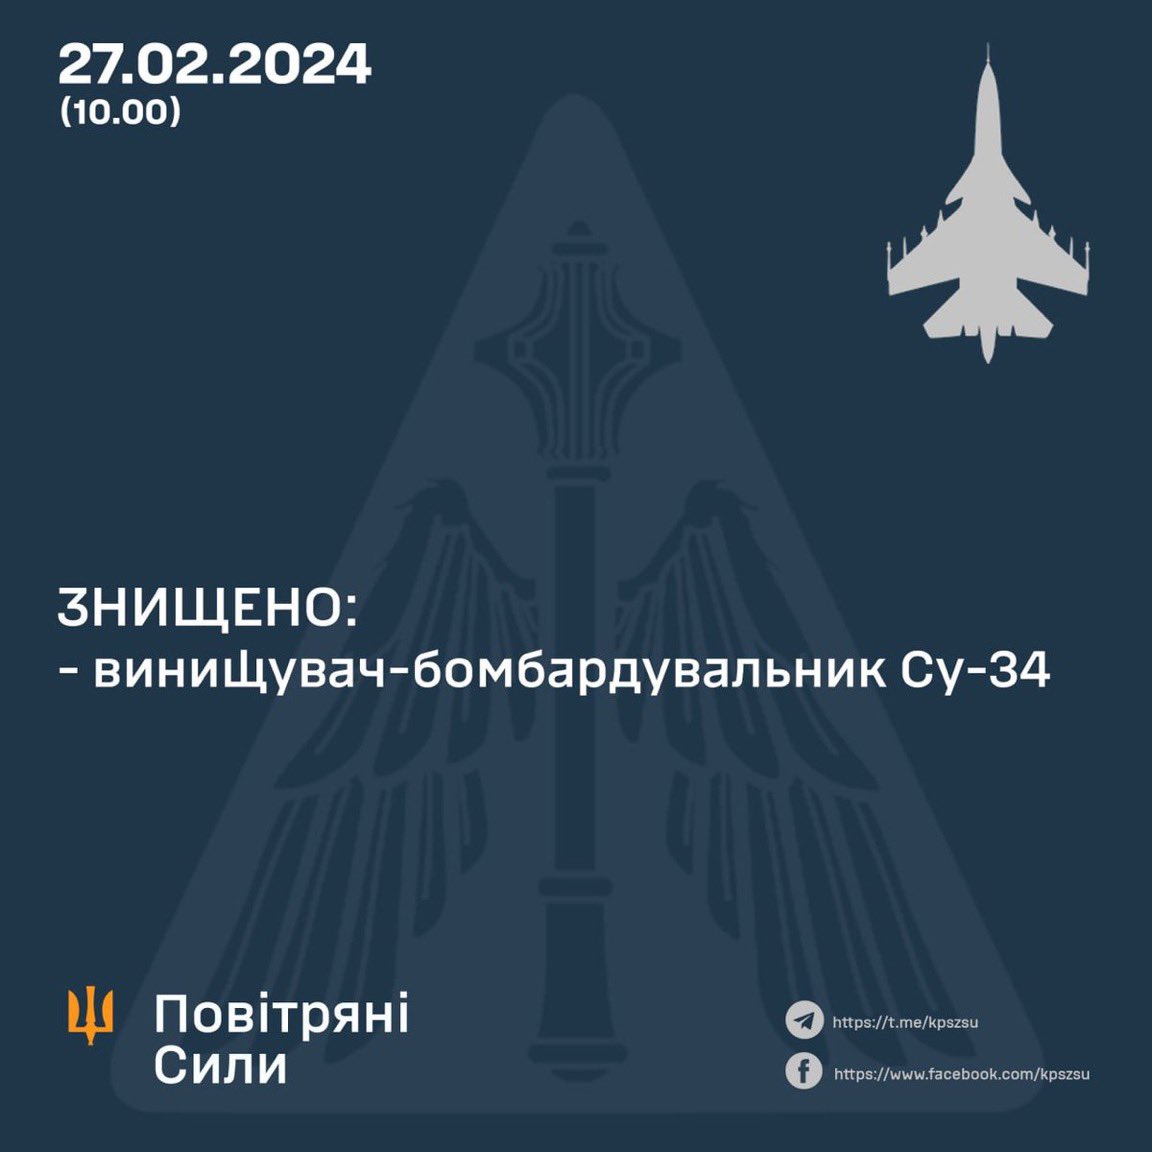 oekraïense luchtmacht haalt twee russische su-34 gevechtsbommenwerpers neer op één dag